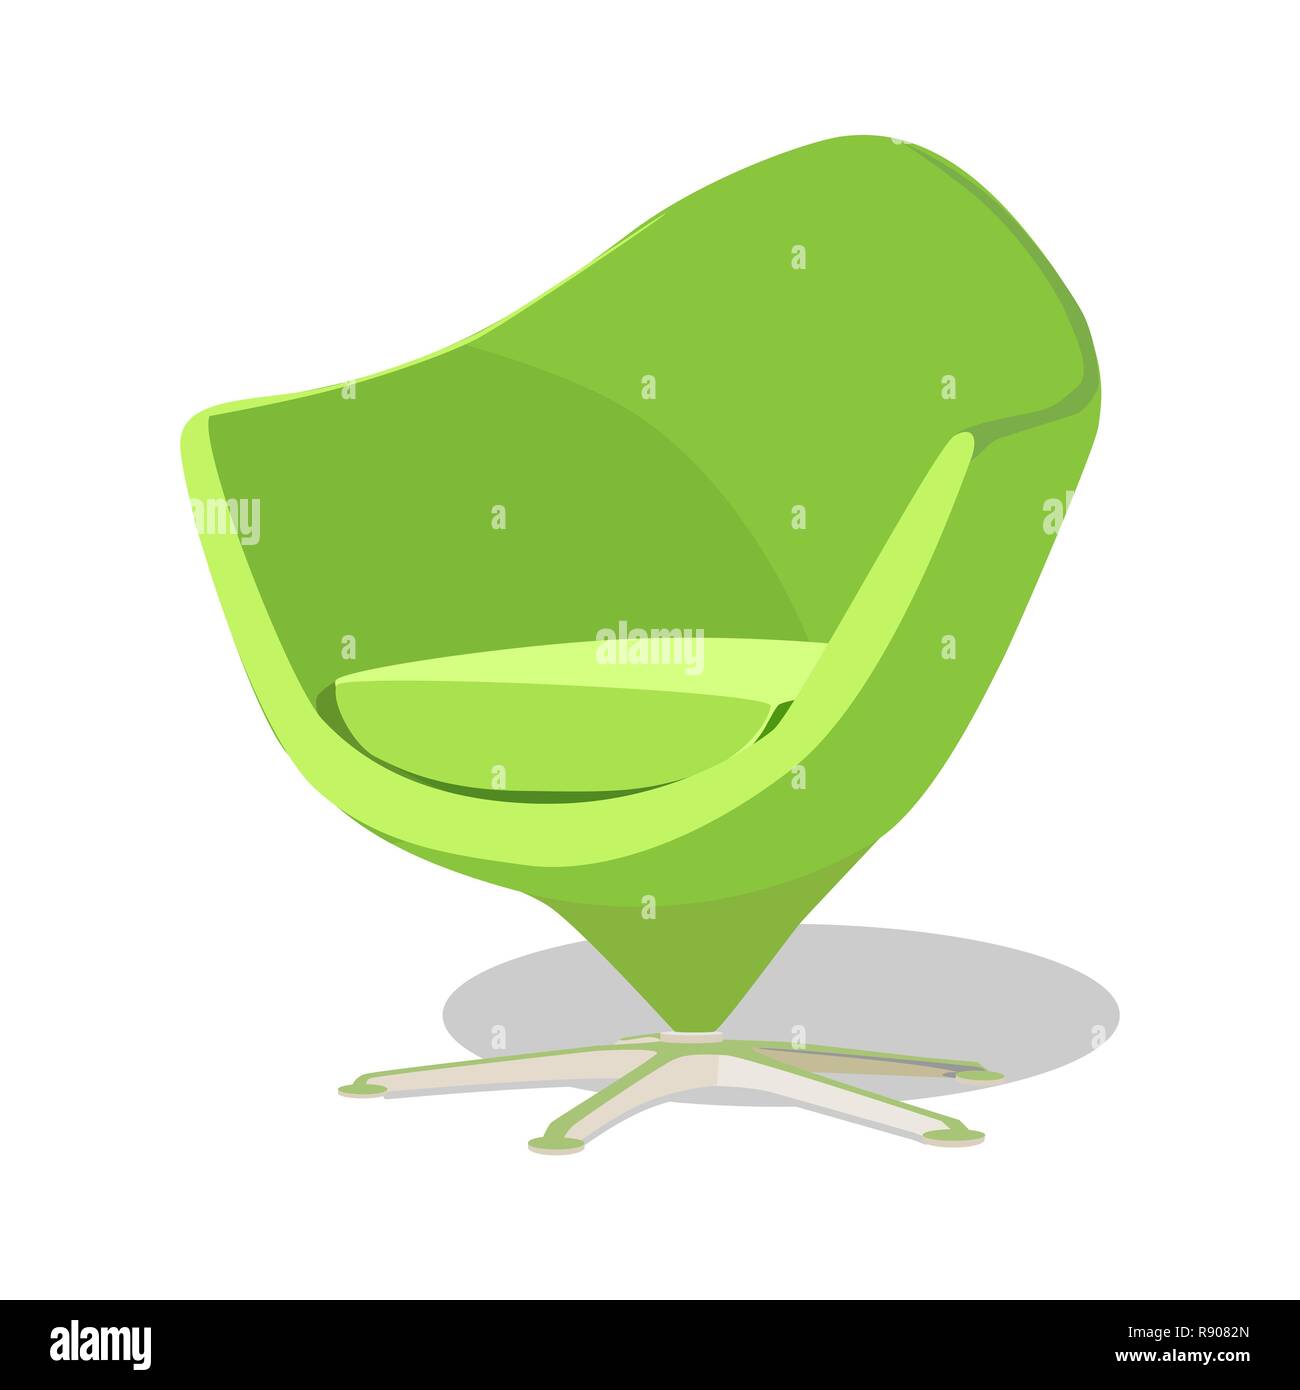 Moderno soft verde poltrona con imbottitura - interior design elemento isolato su sfondo bianco. Illustrazione Vettoriale